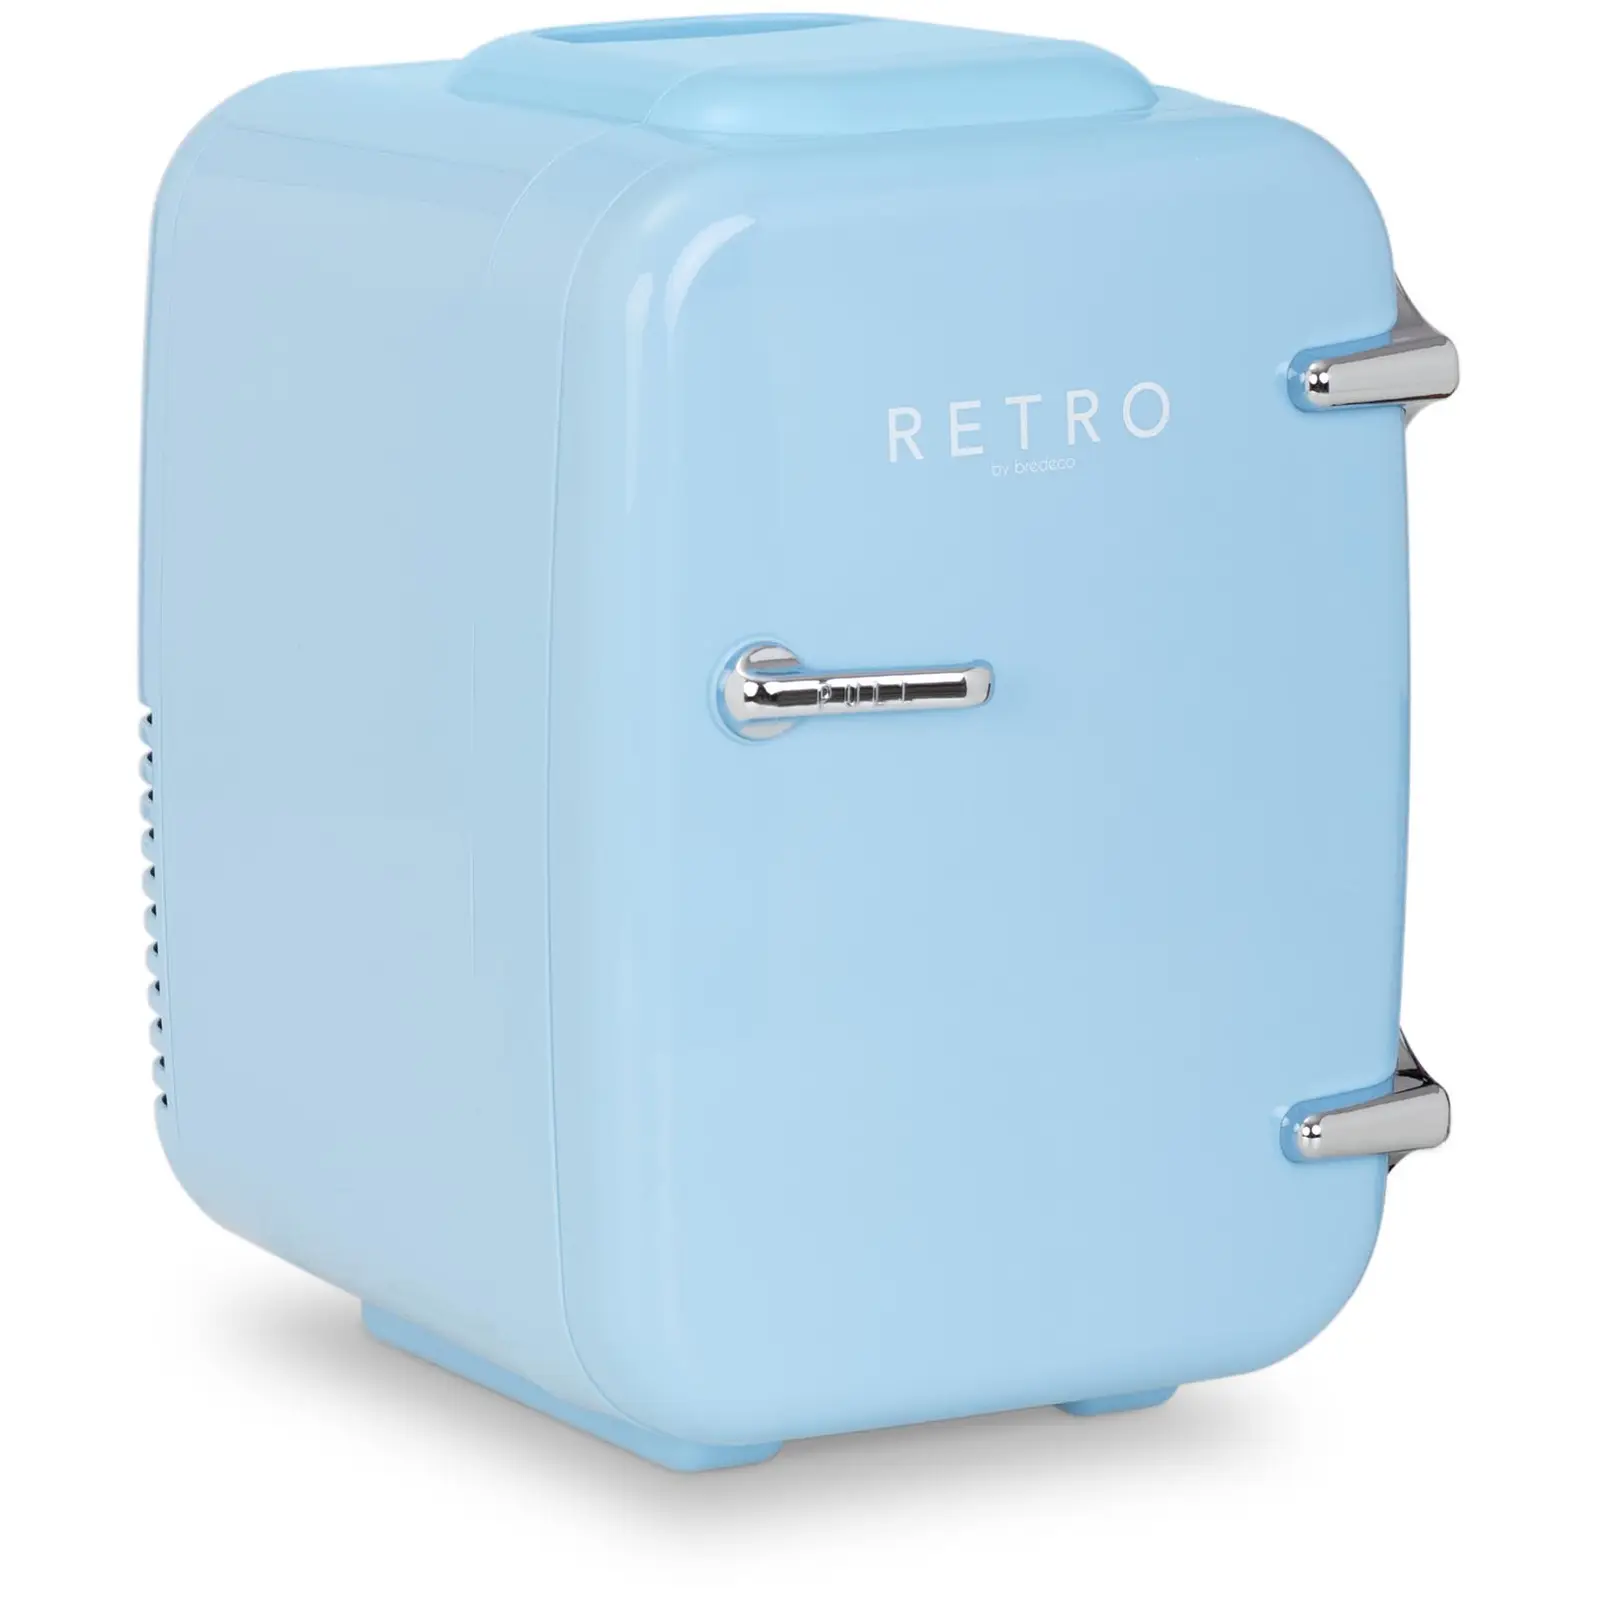 Mini chladnička 4 l modrý - Minibary bredeco